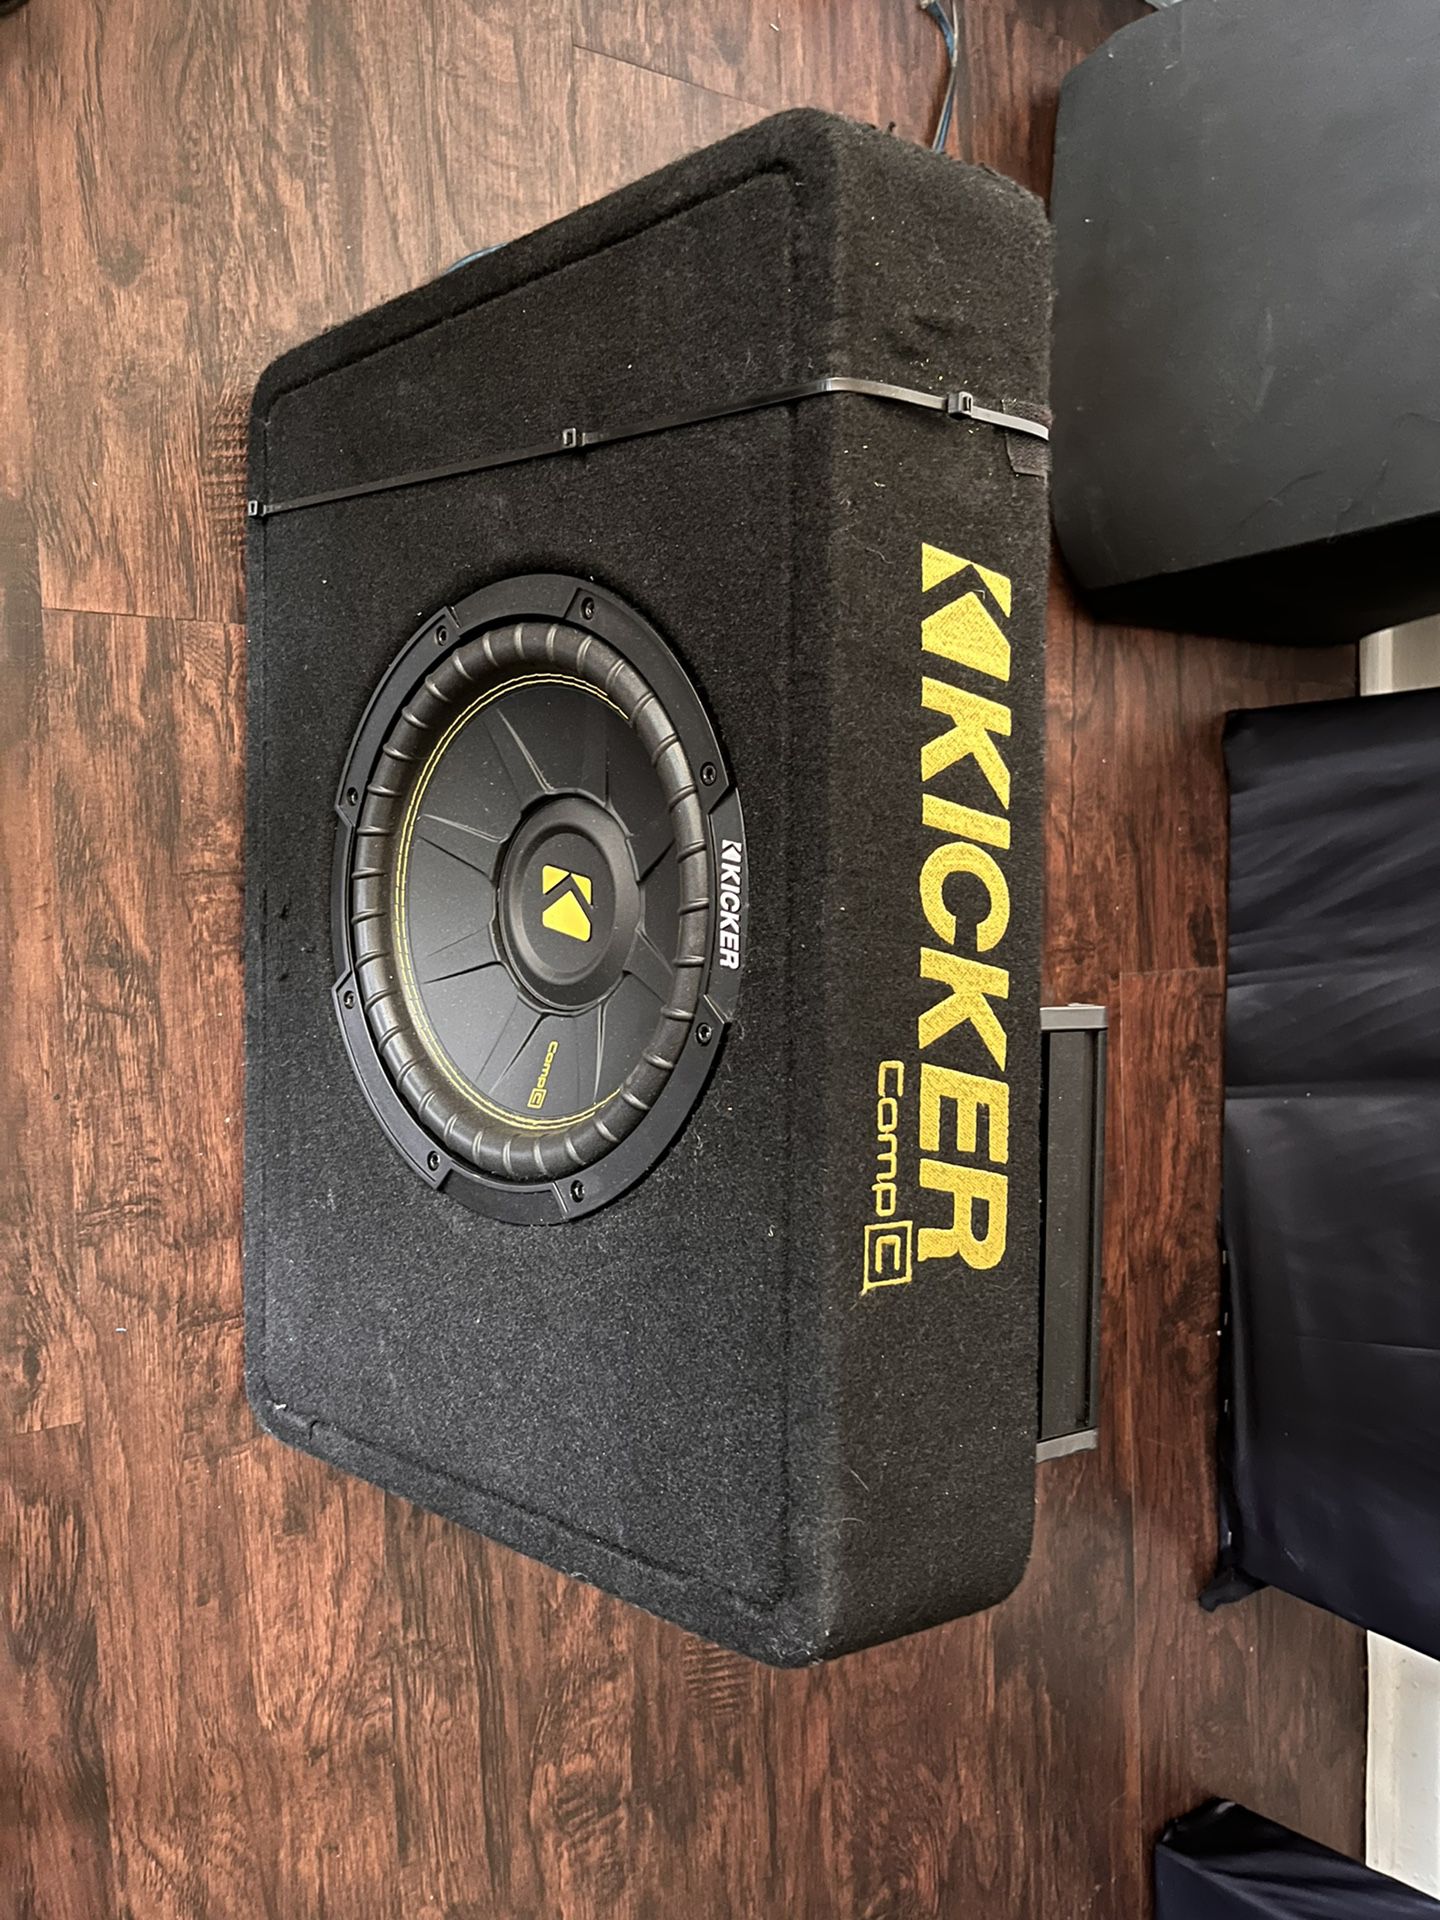 Kicker 10” Subwoofer with 300 Watt Mono Amplifier